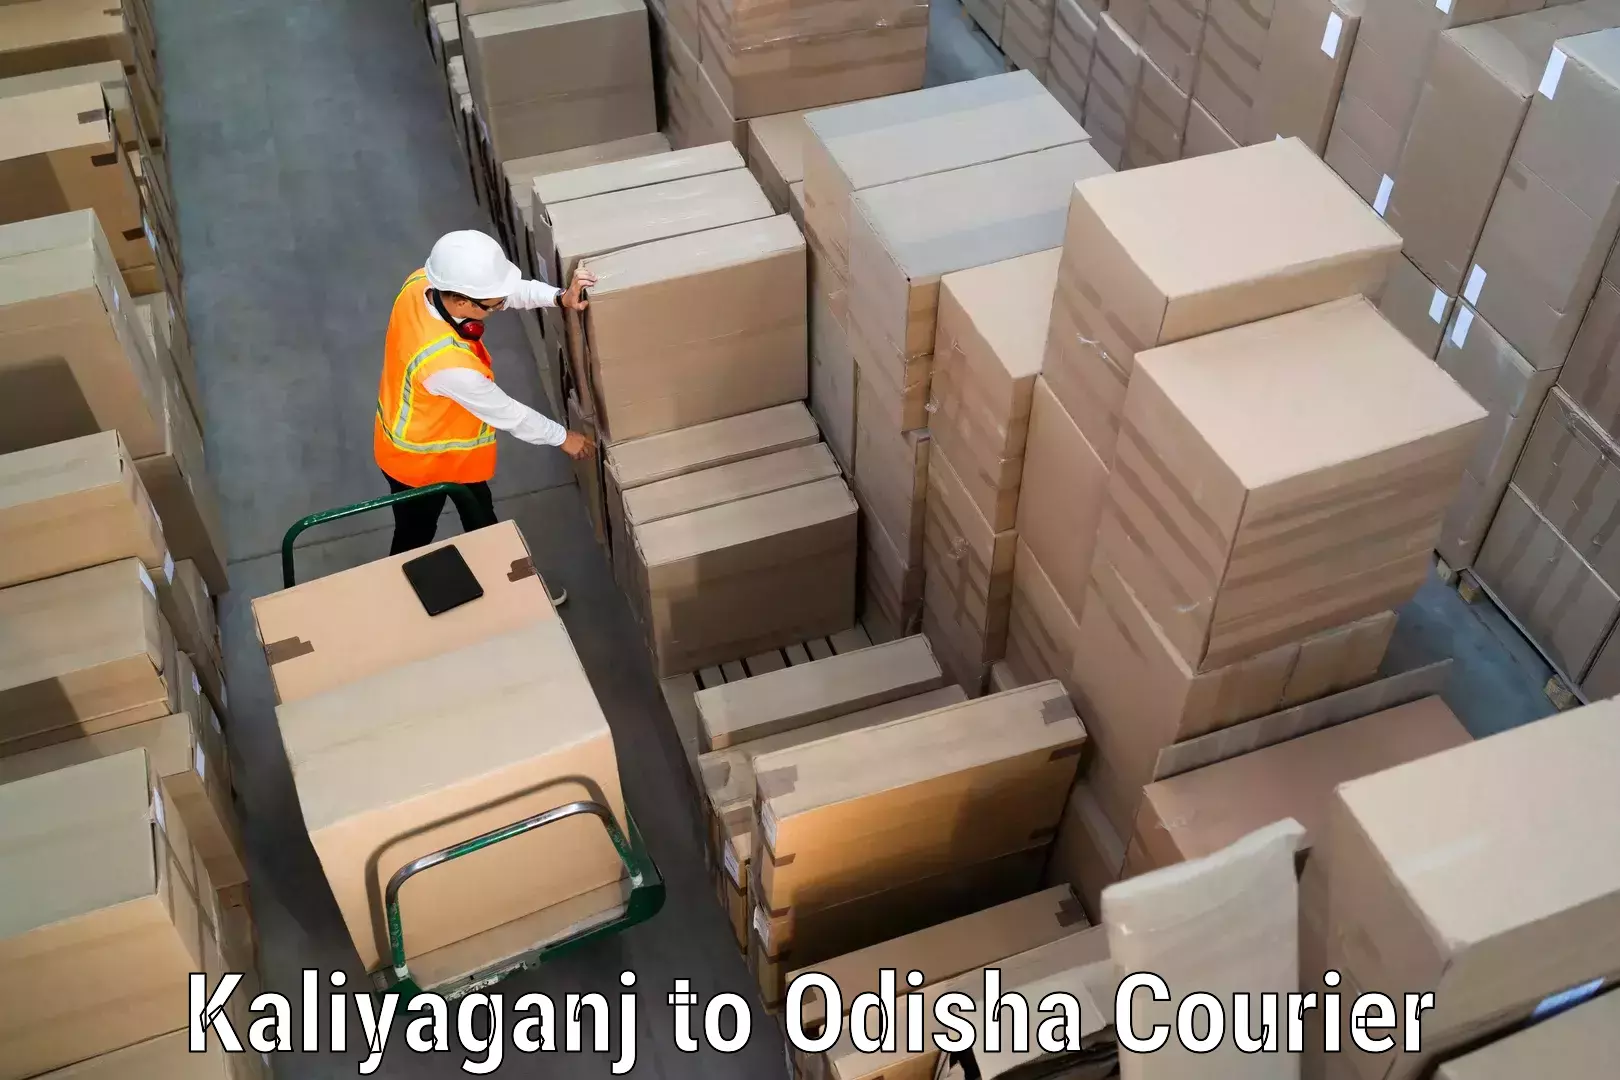 Reliable courier service Kaliyaganj to Odisha